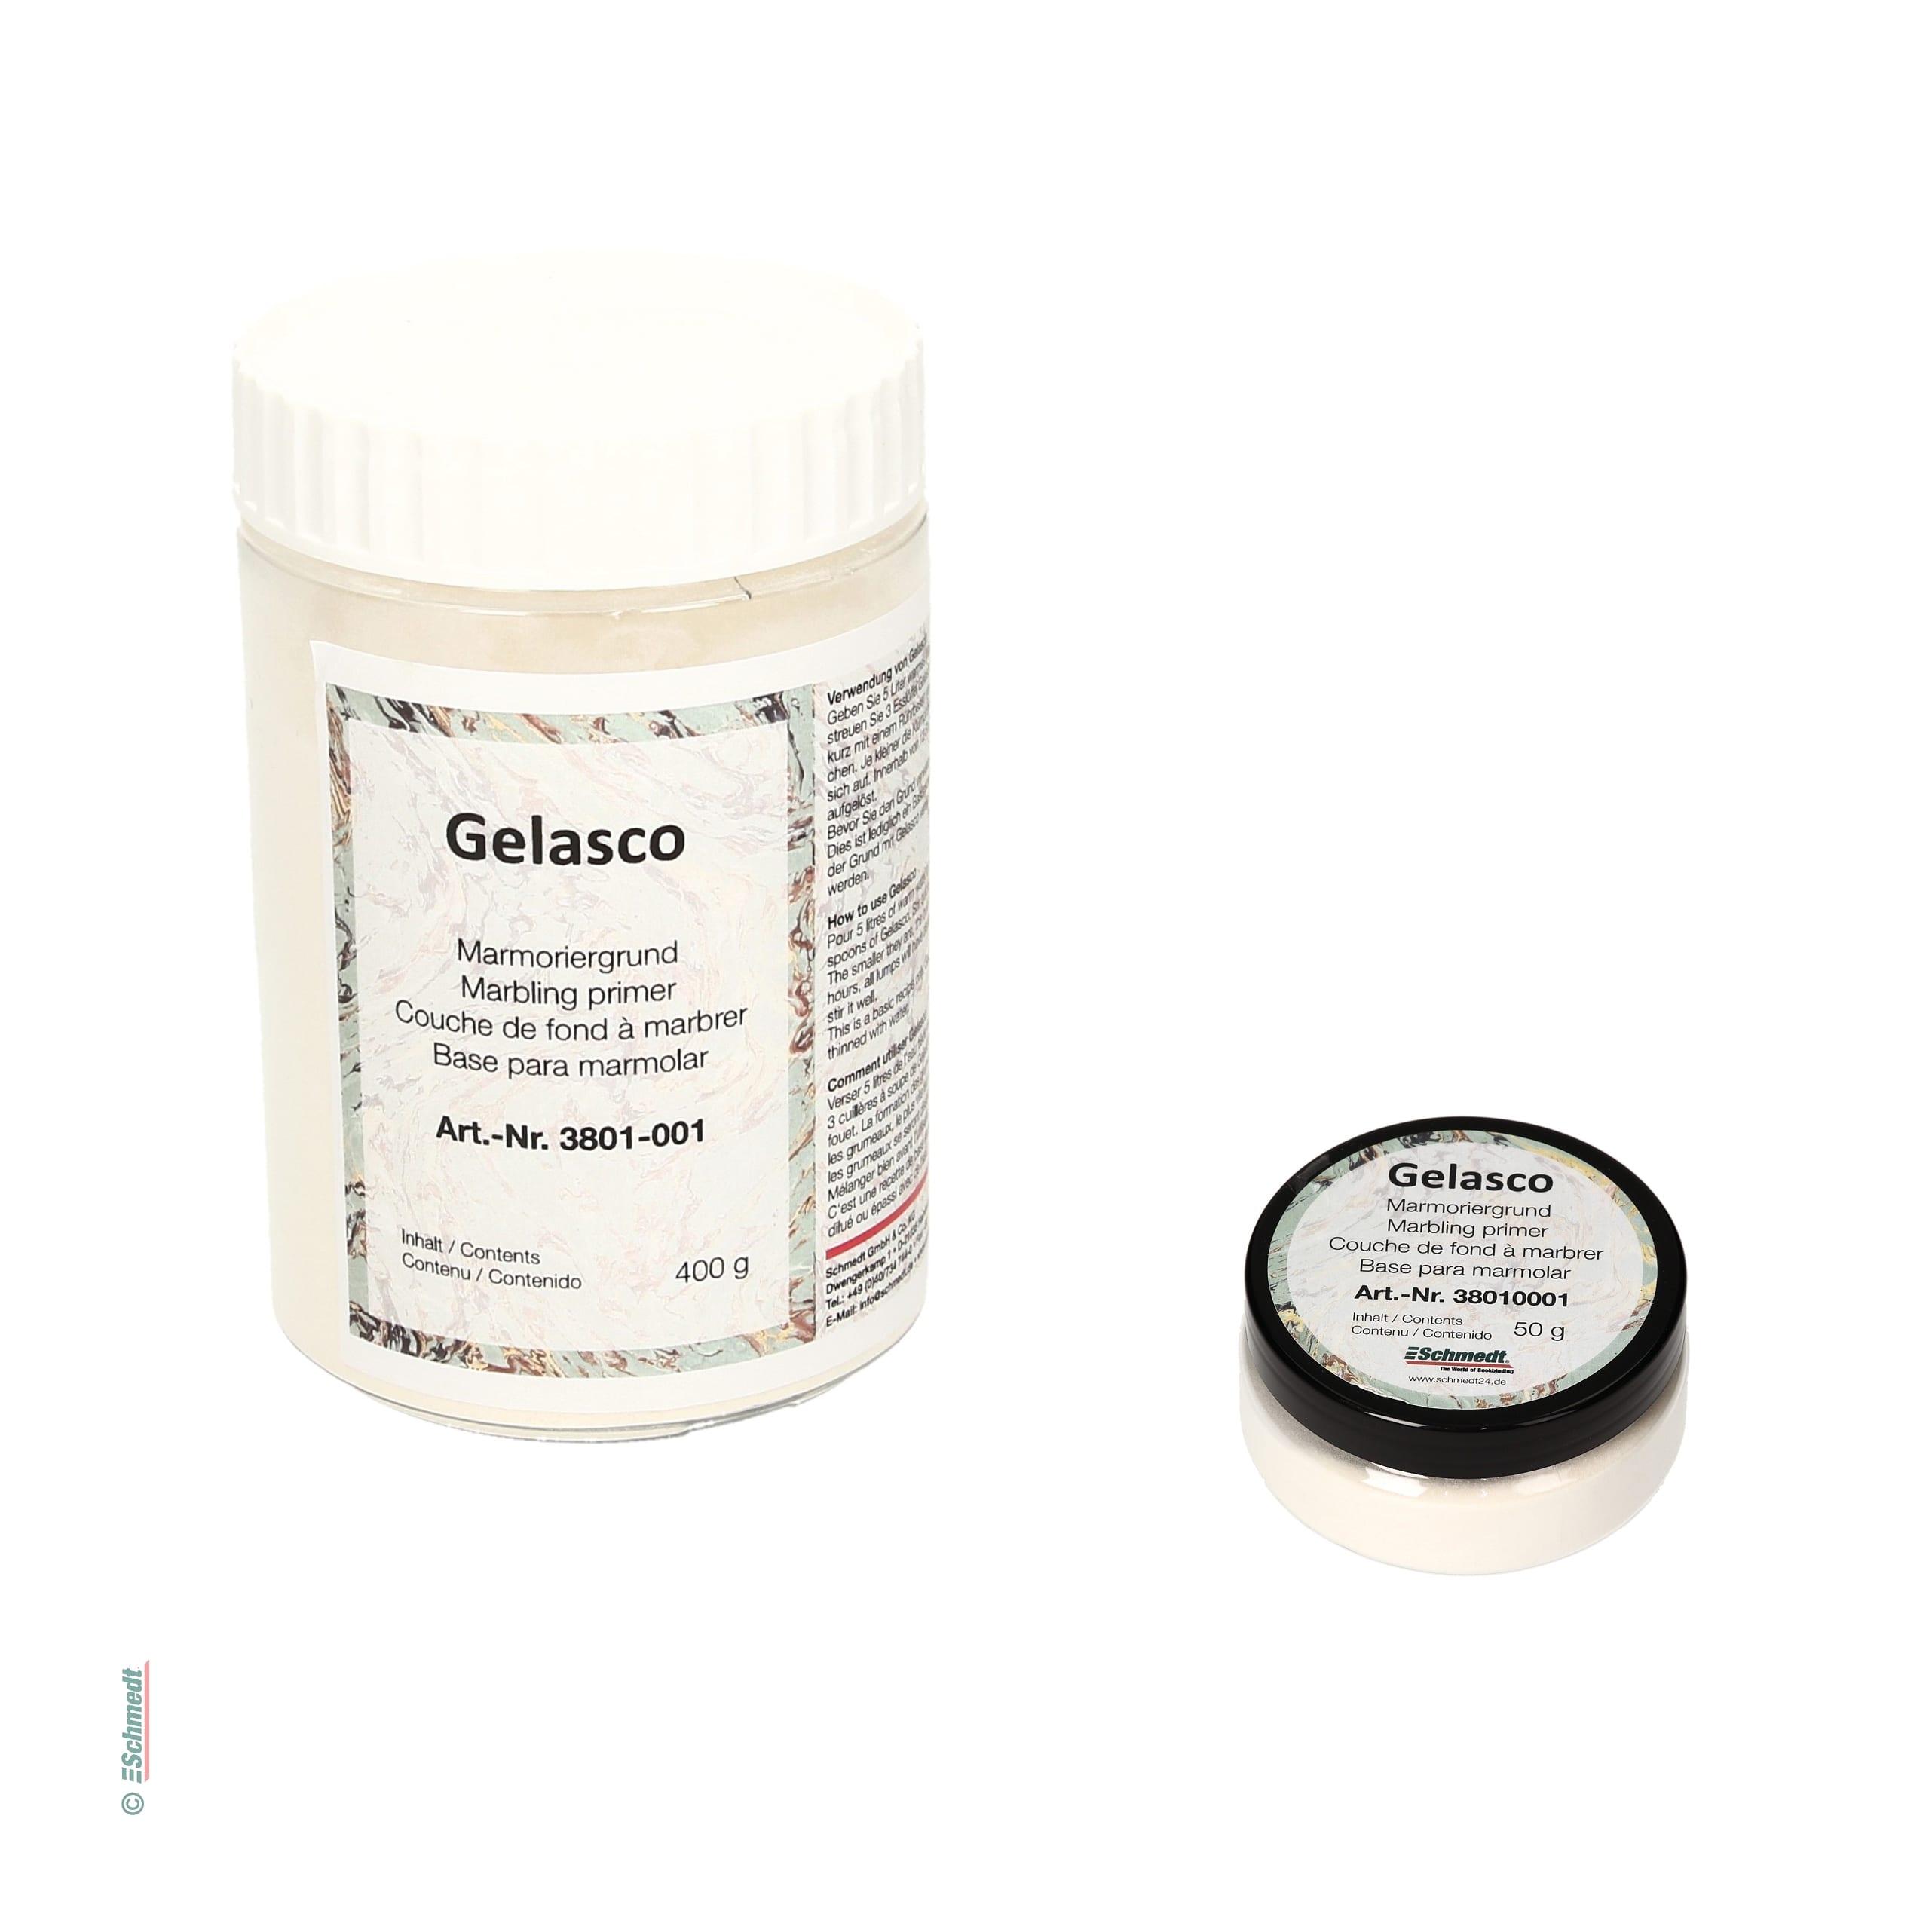 Gelasco - Marmoriergrund - Gebindegröße Dose / 400 g - Grundierung für die Herstellung von Marmorpapieren. Verhindert zu starkes Verlaufen d...